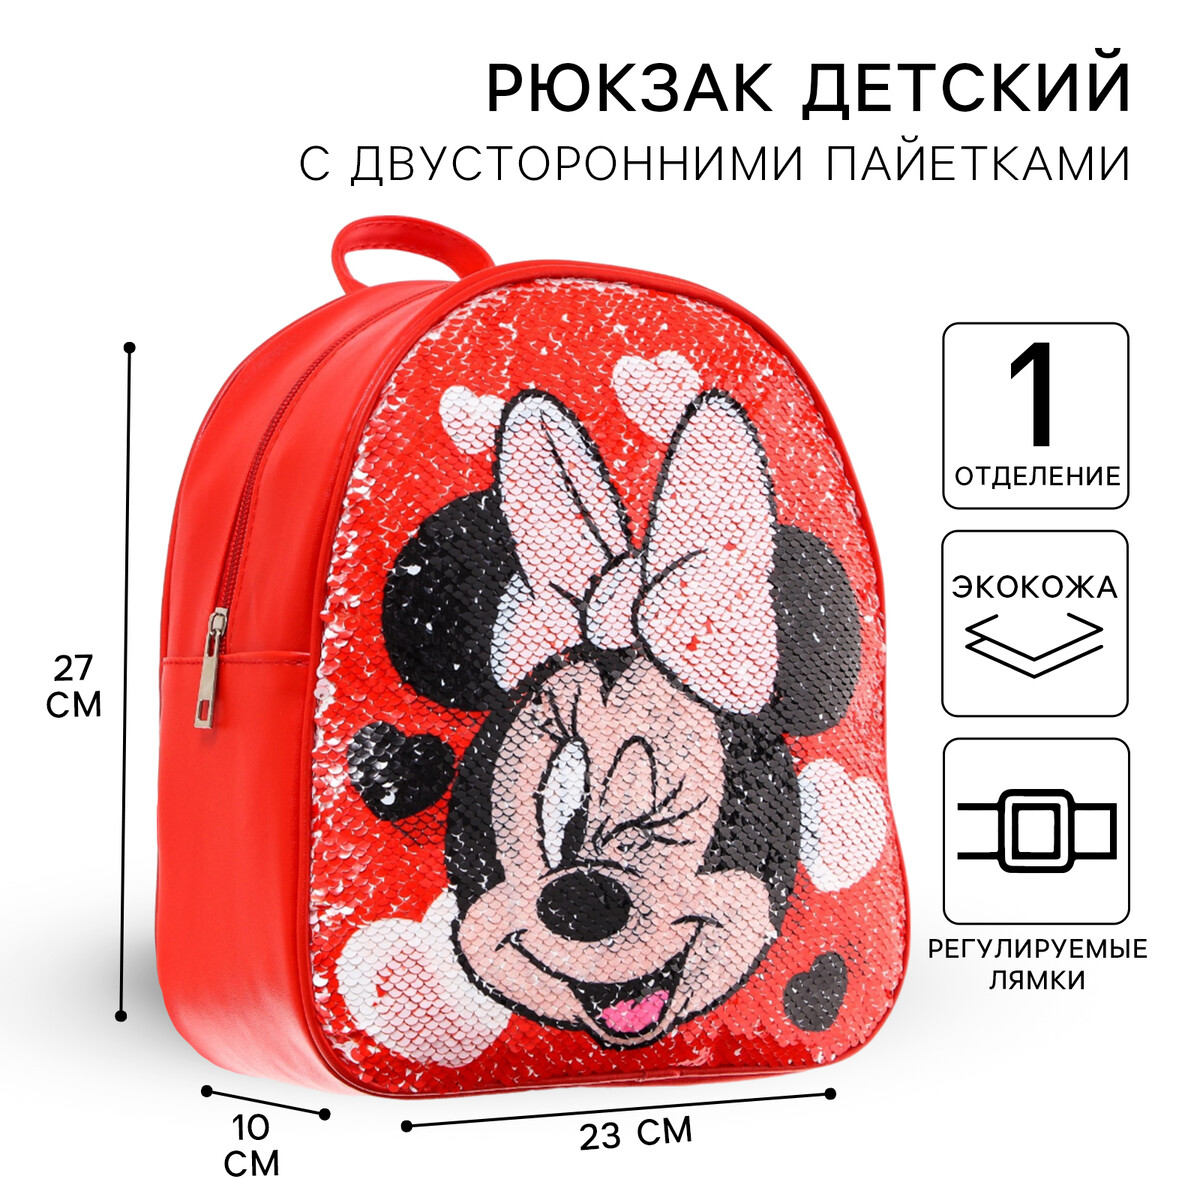 Рюкзак детский с двусторонними пайетками, 23 см х 12 см х 27 см Disney